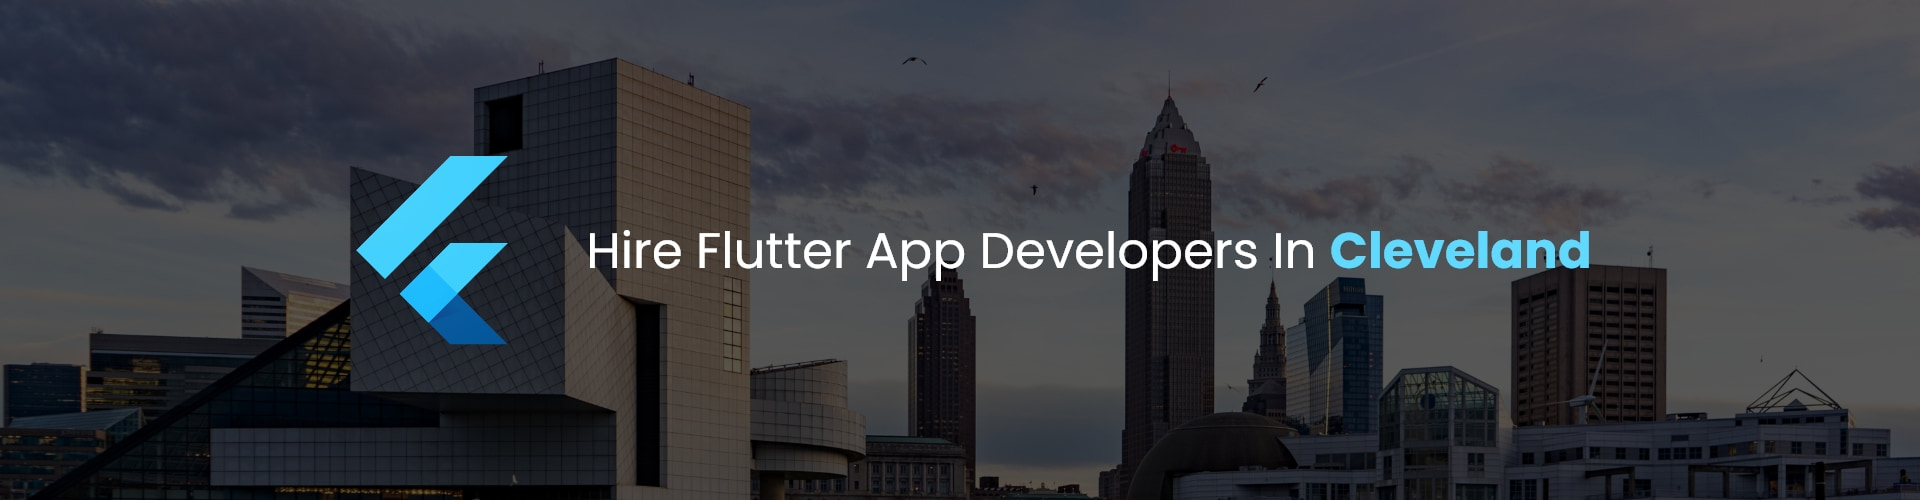 hire flutter app developers in cleveland